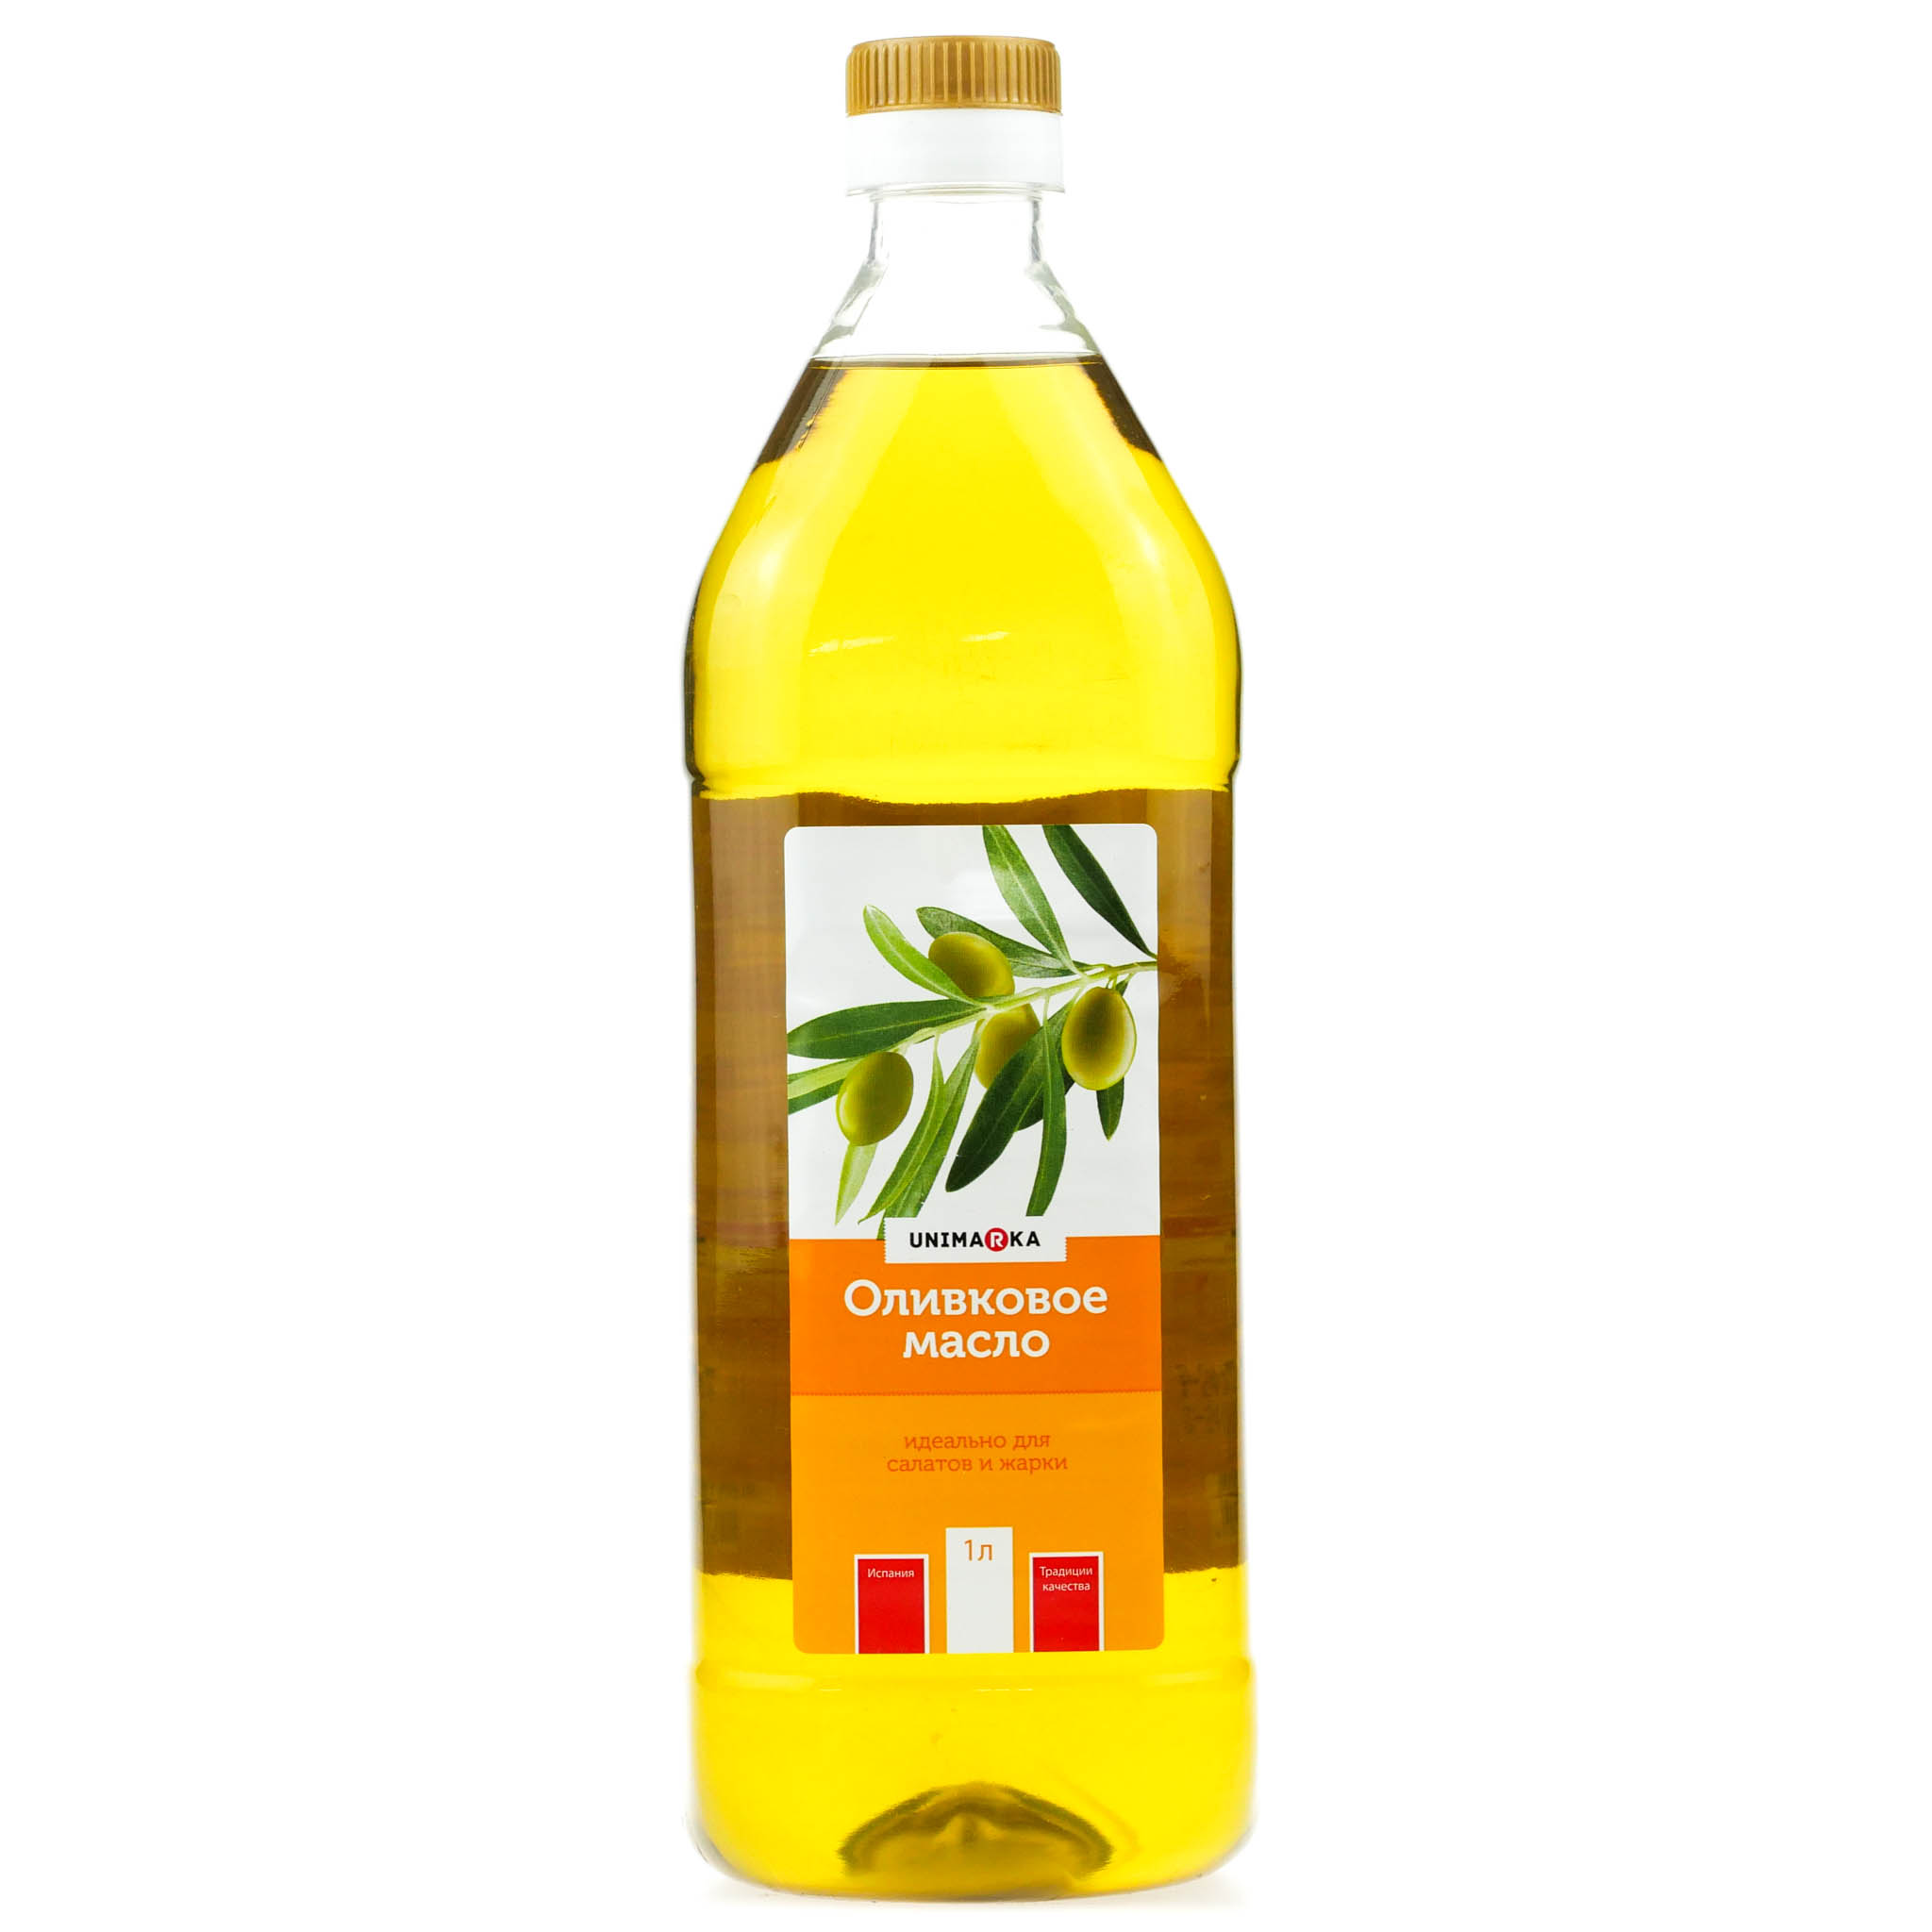 Оливковое масло для салатов нерафинированное. Оливковое масло botanika 1 л рафинированное. Оливковое масло рафинированное и нерафинированное. Масло рапсовое нерафинированное. Рафинированное масло оливковое для салата.